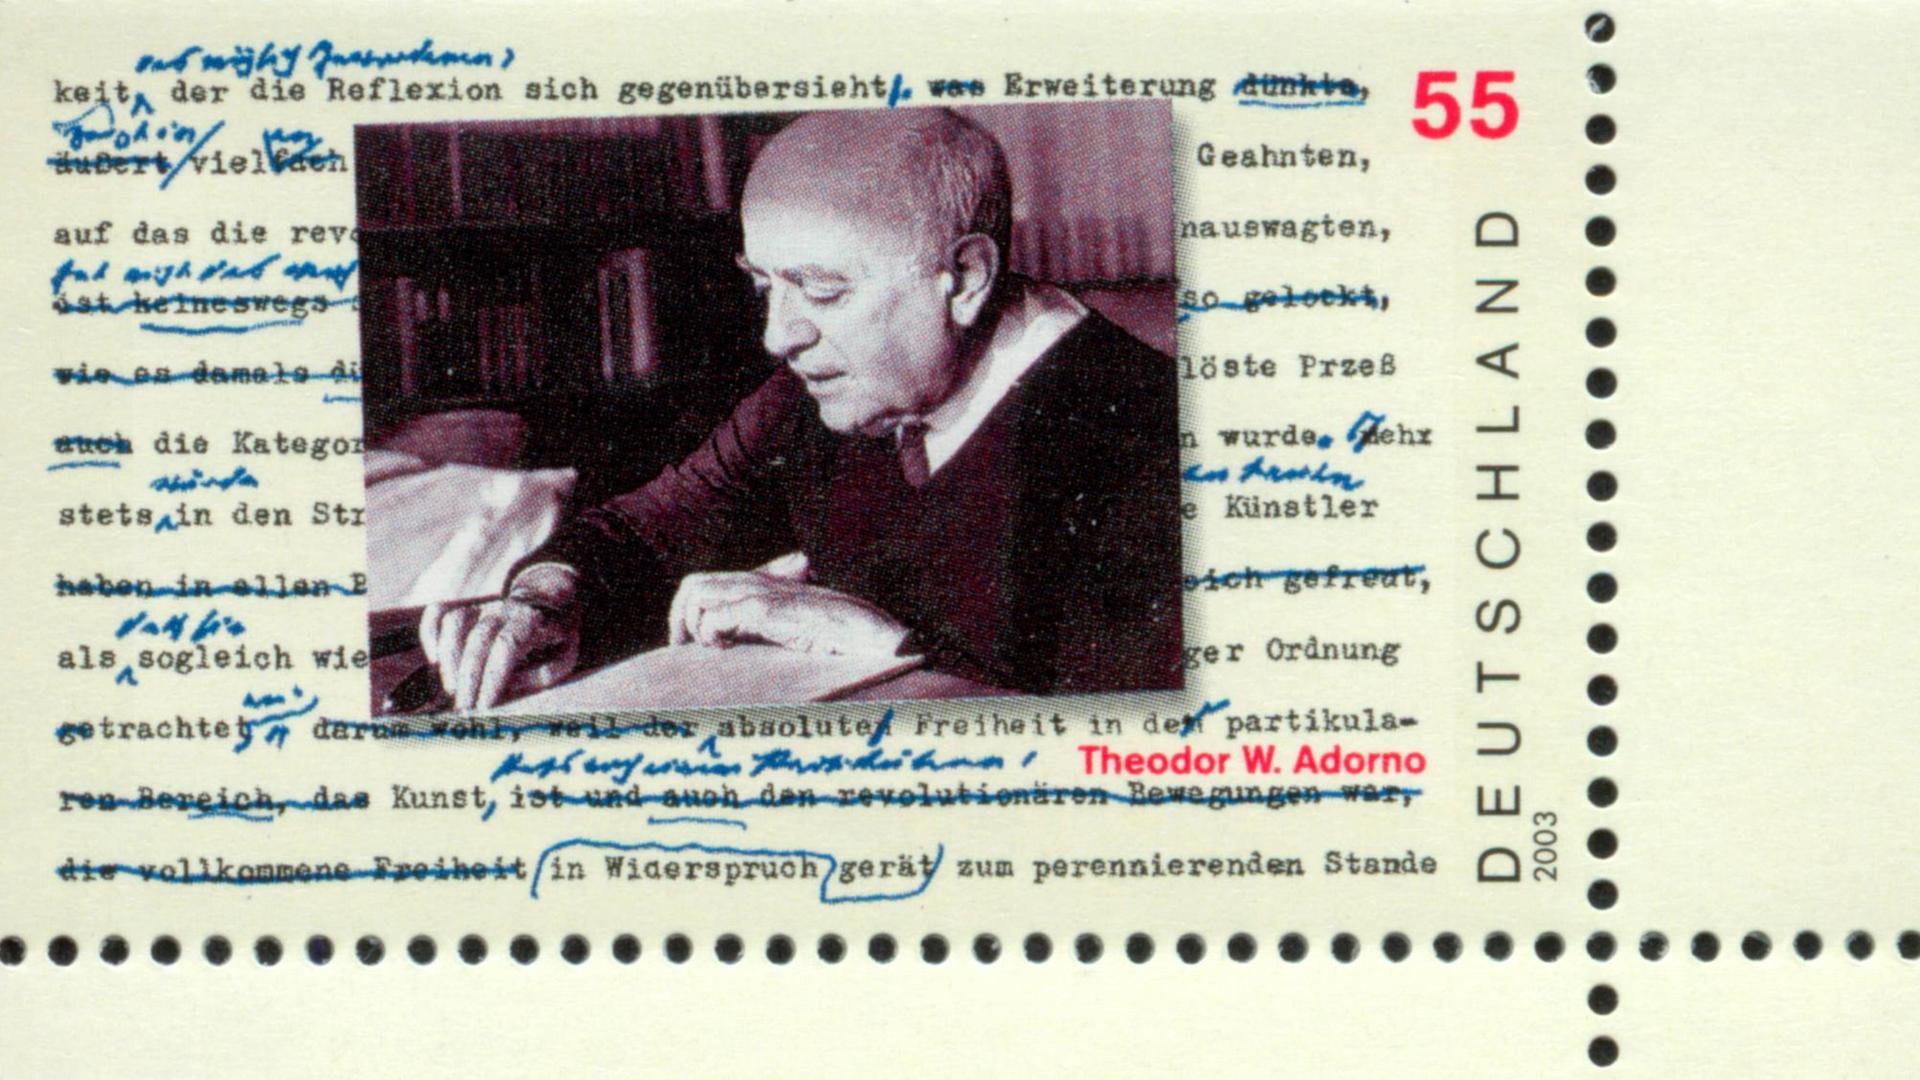 Theodor W. Adorno-Briefmarke der Deutschen Bundespost aus dem Jahr 2007